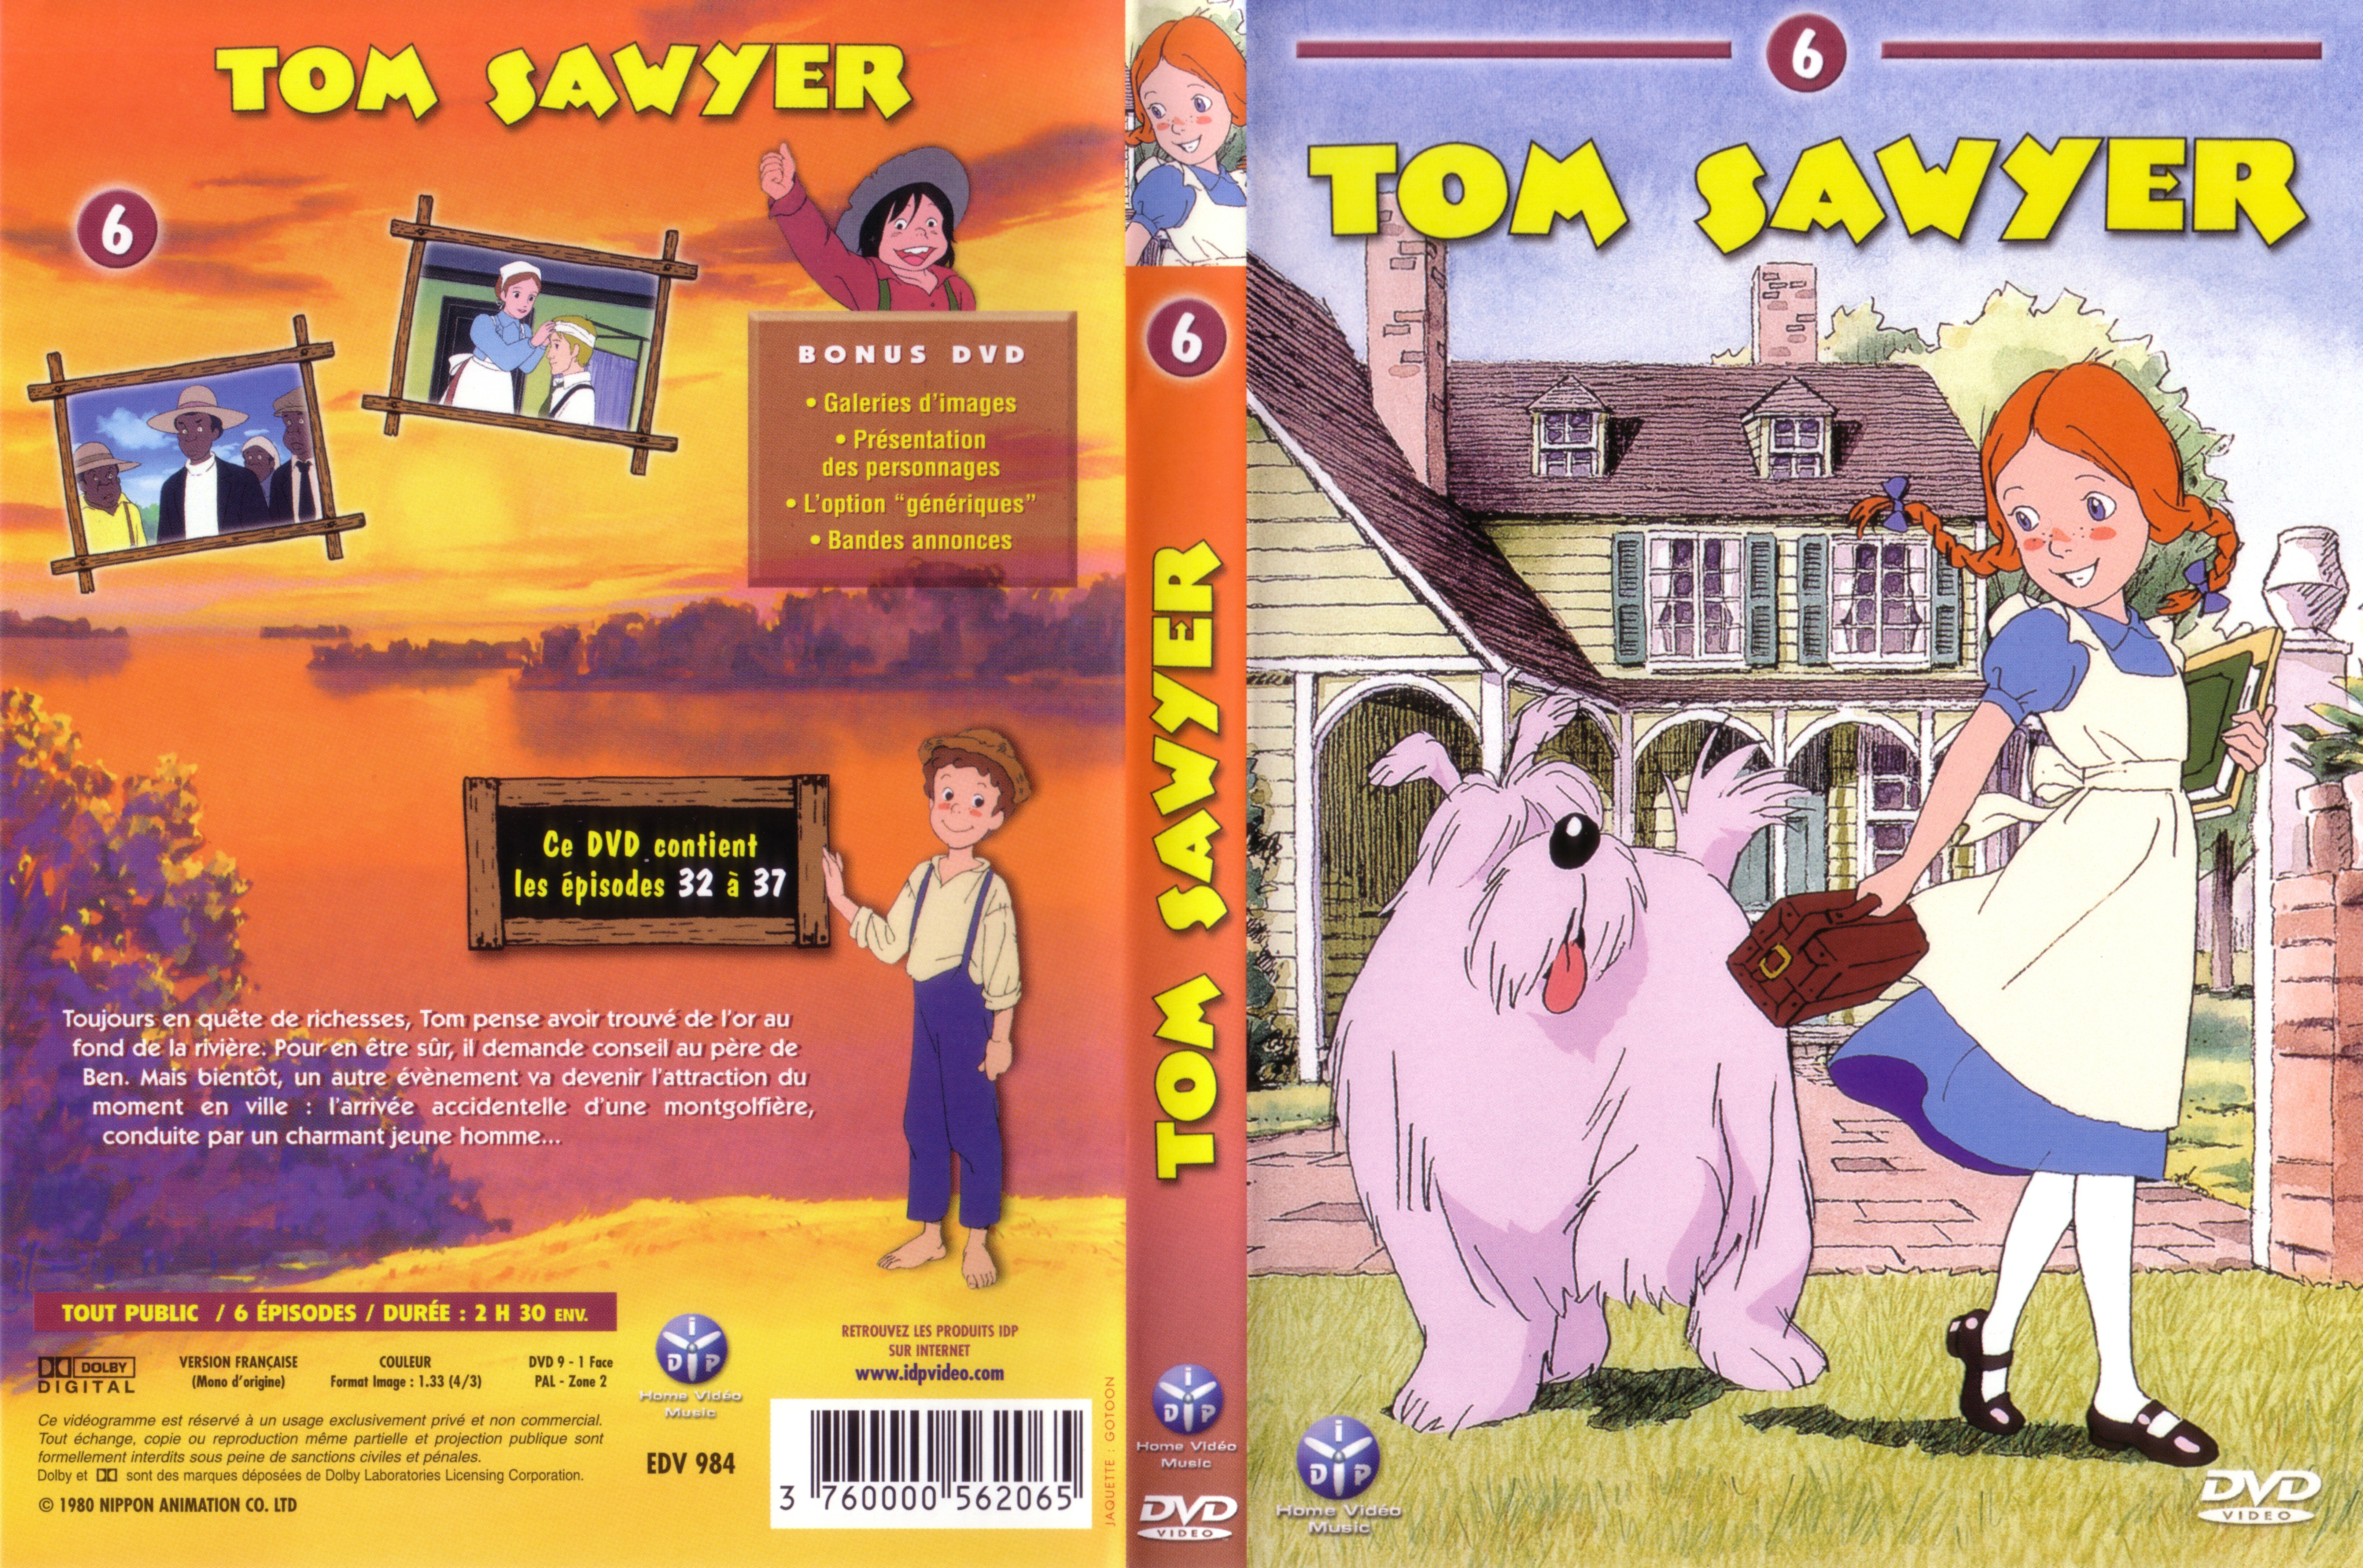 Jaquette DVD Tom Sawyer vol 6 v2